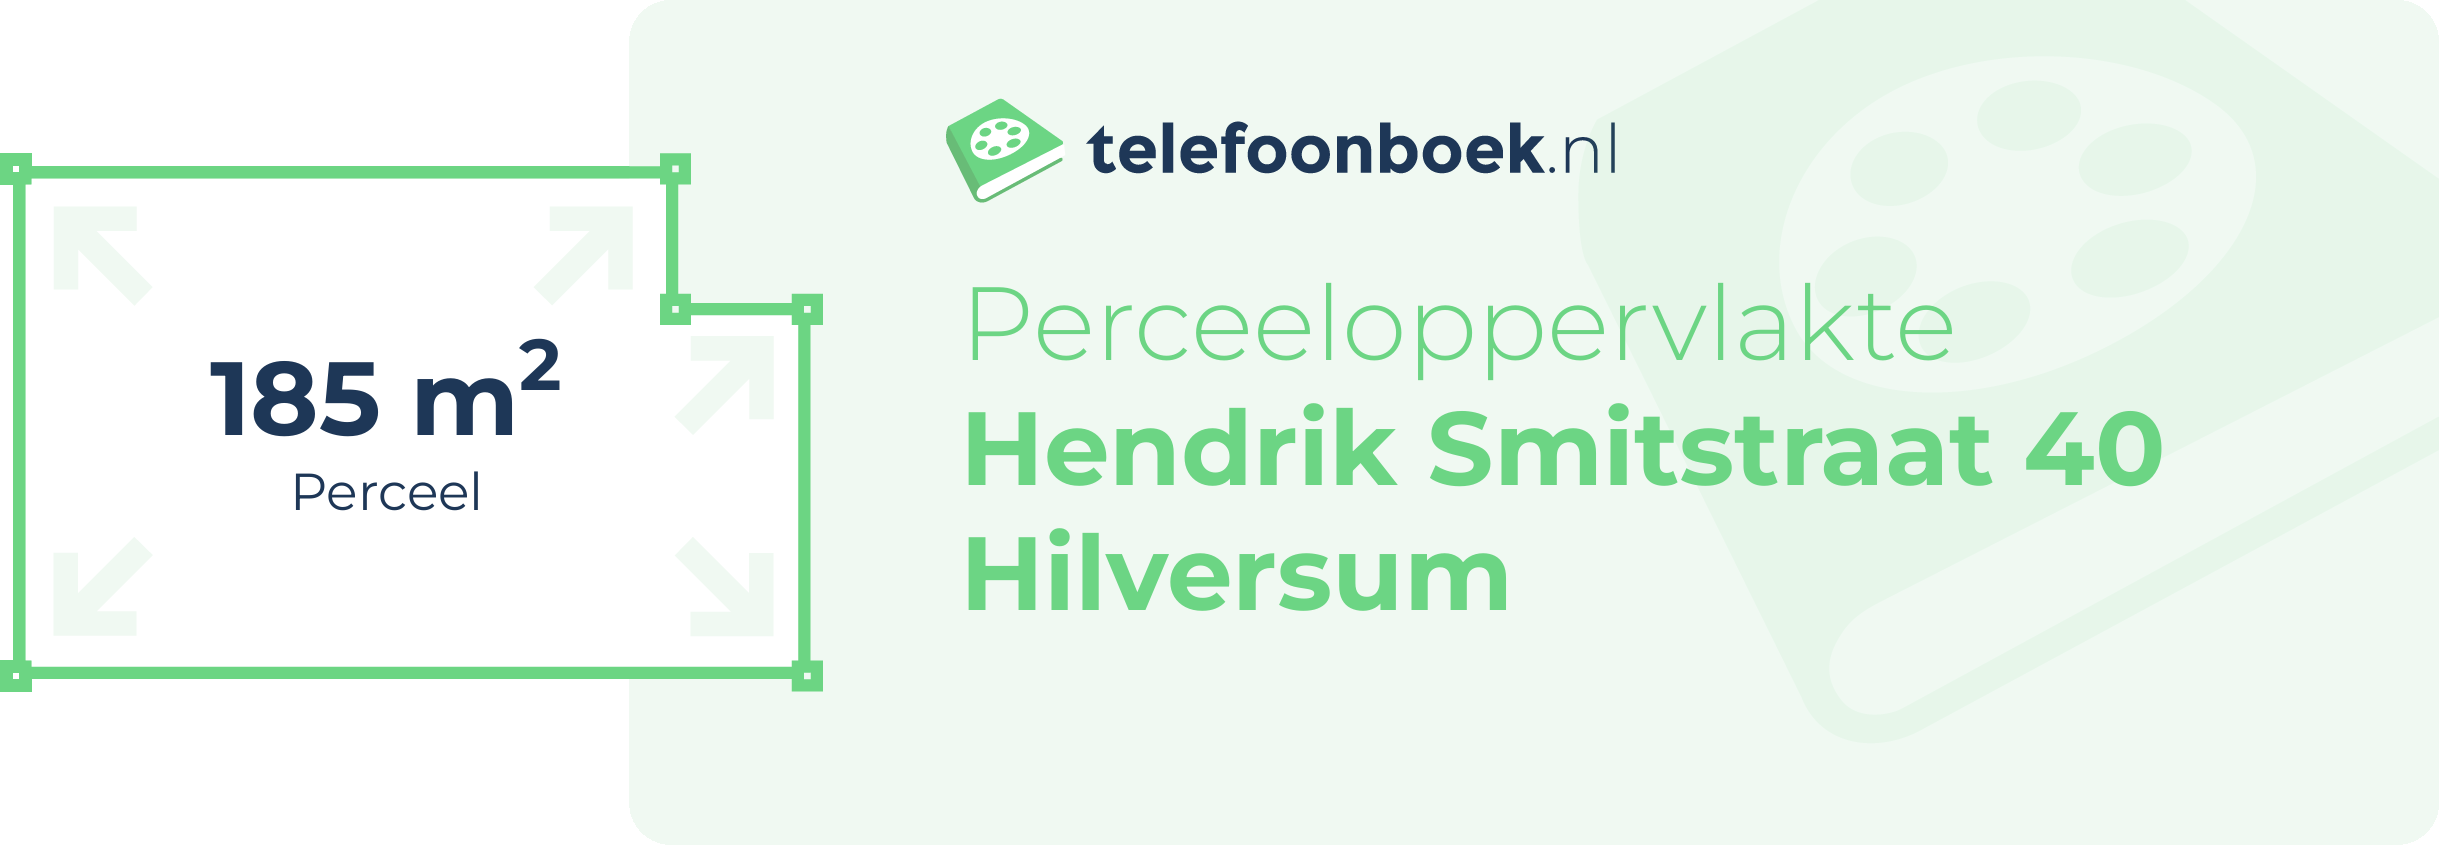 Perceeloppervlakte Hendrik Smitstraat 40 Hilversum